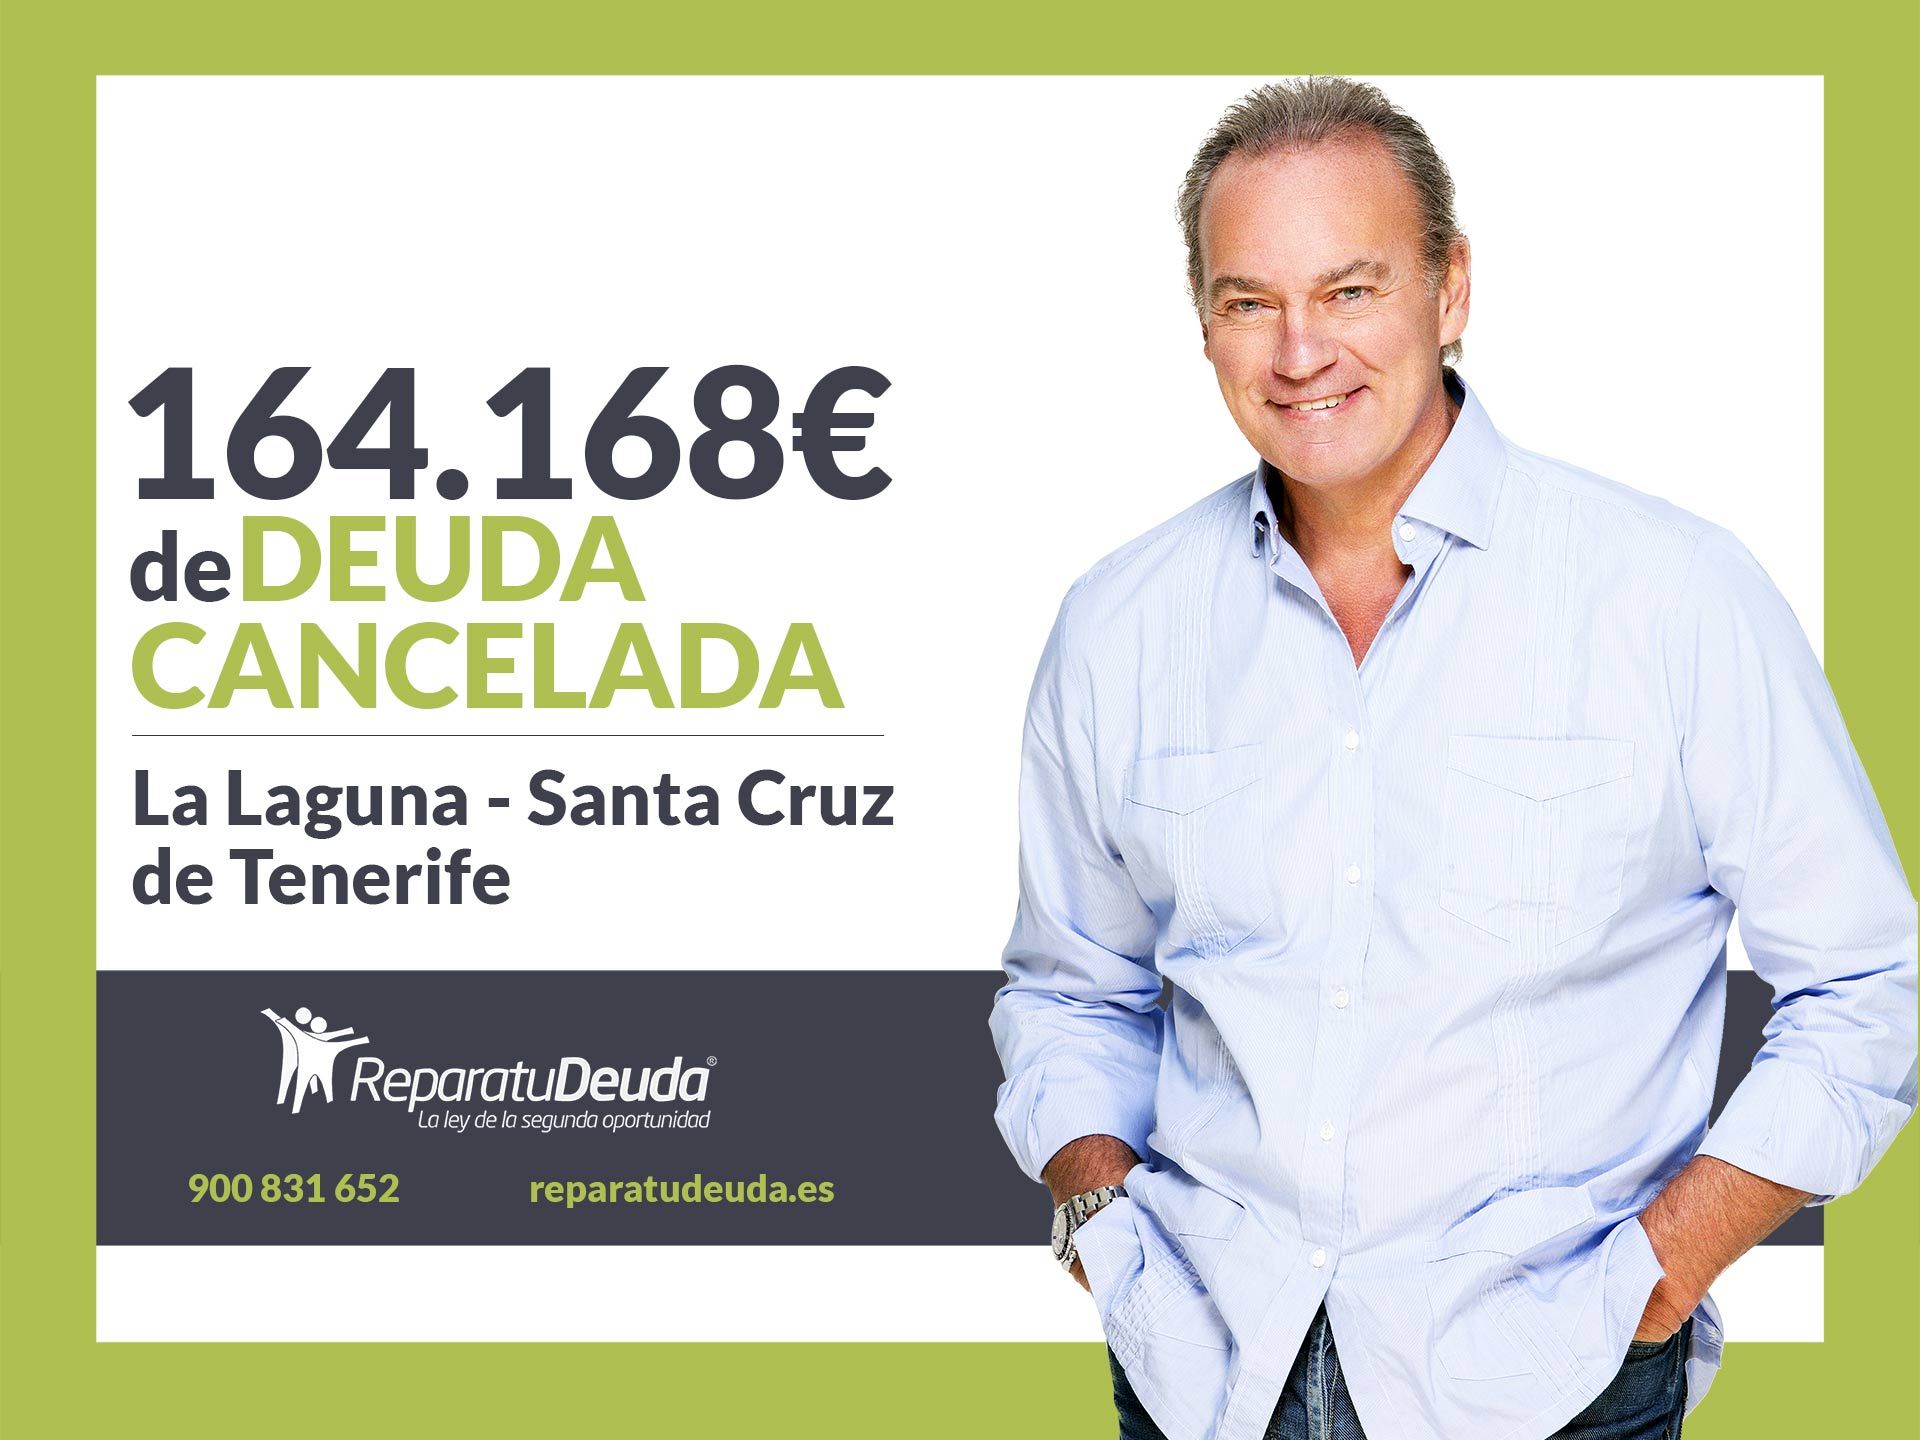 Repara tu Deuda Abogados cancela 164.168? en La Laguna (Tenerife) con la Ley de Segunda Oportunidad